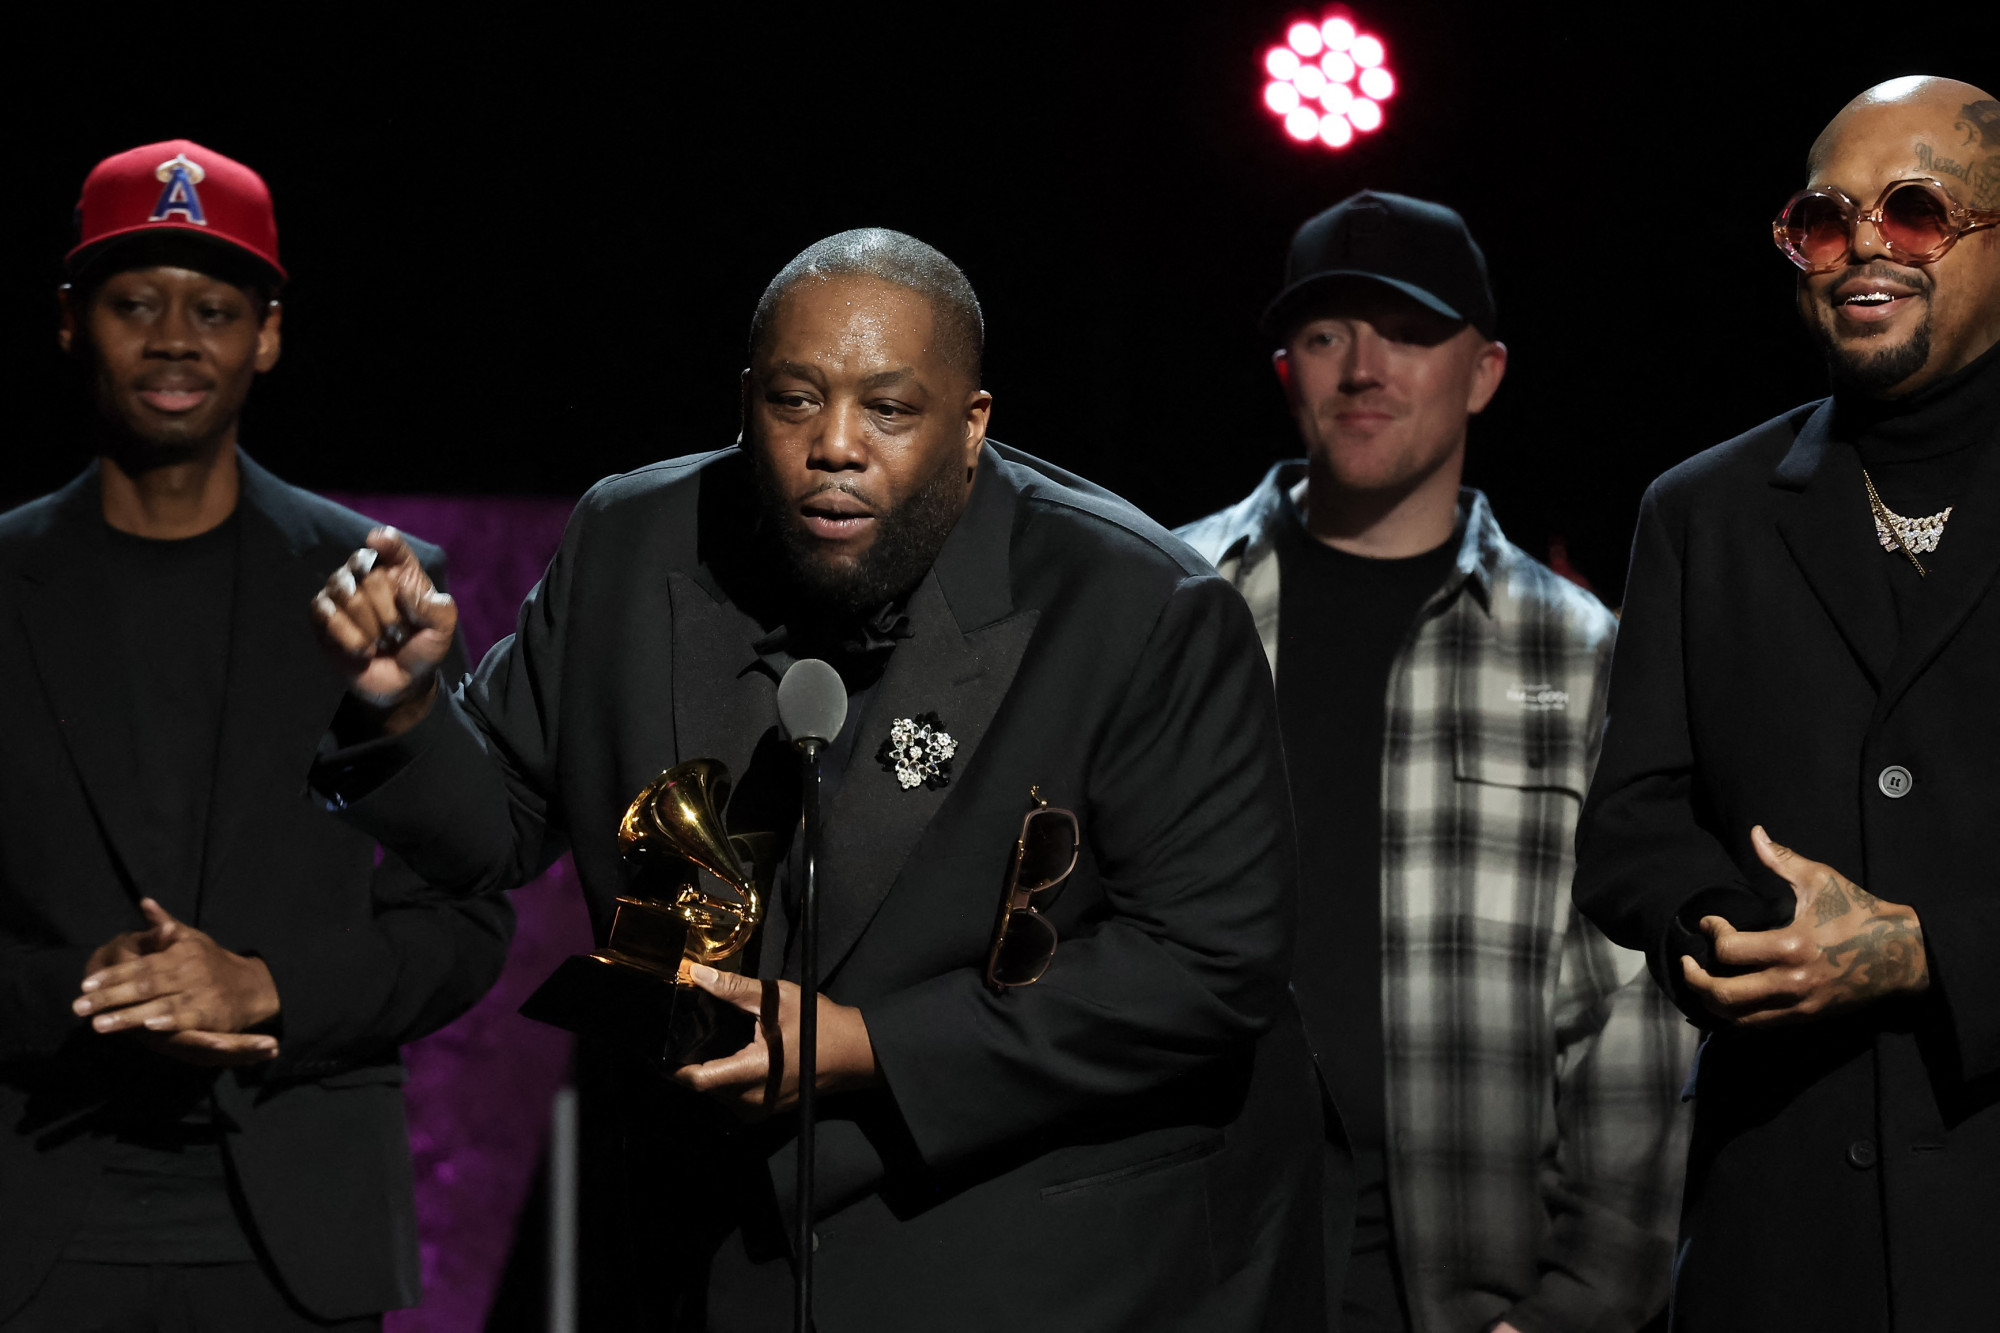 Átvette három Grammy-díját, valakivel összeverekedett a színfalak mögött, majd bilincsben vitték el a rendőrök az amerikai rappert